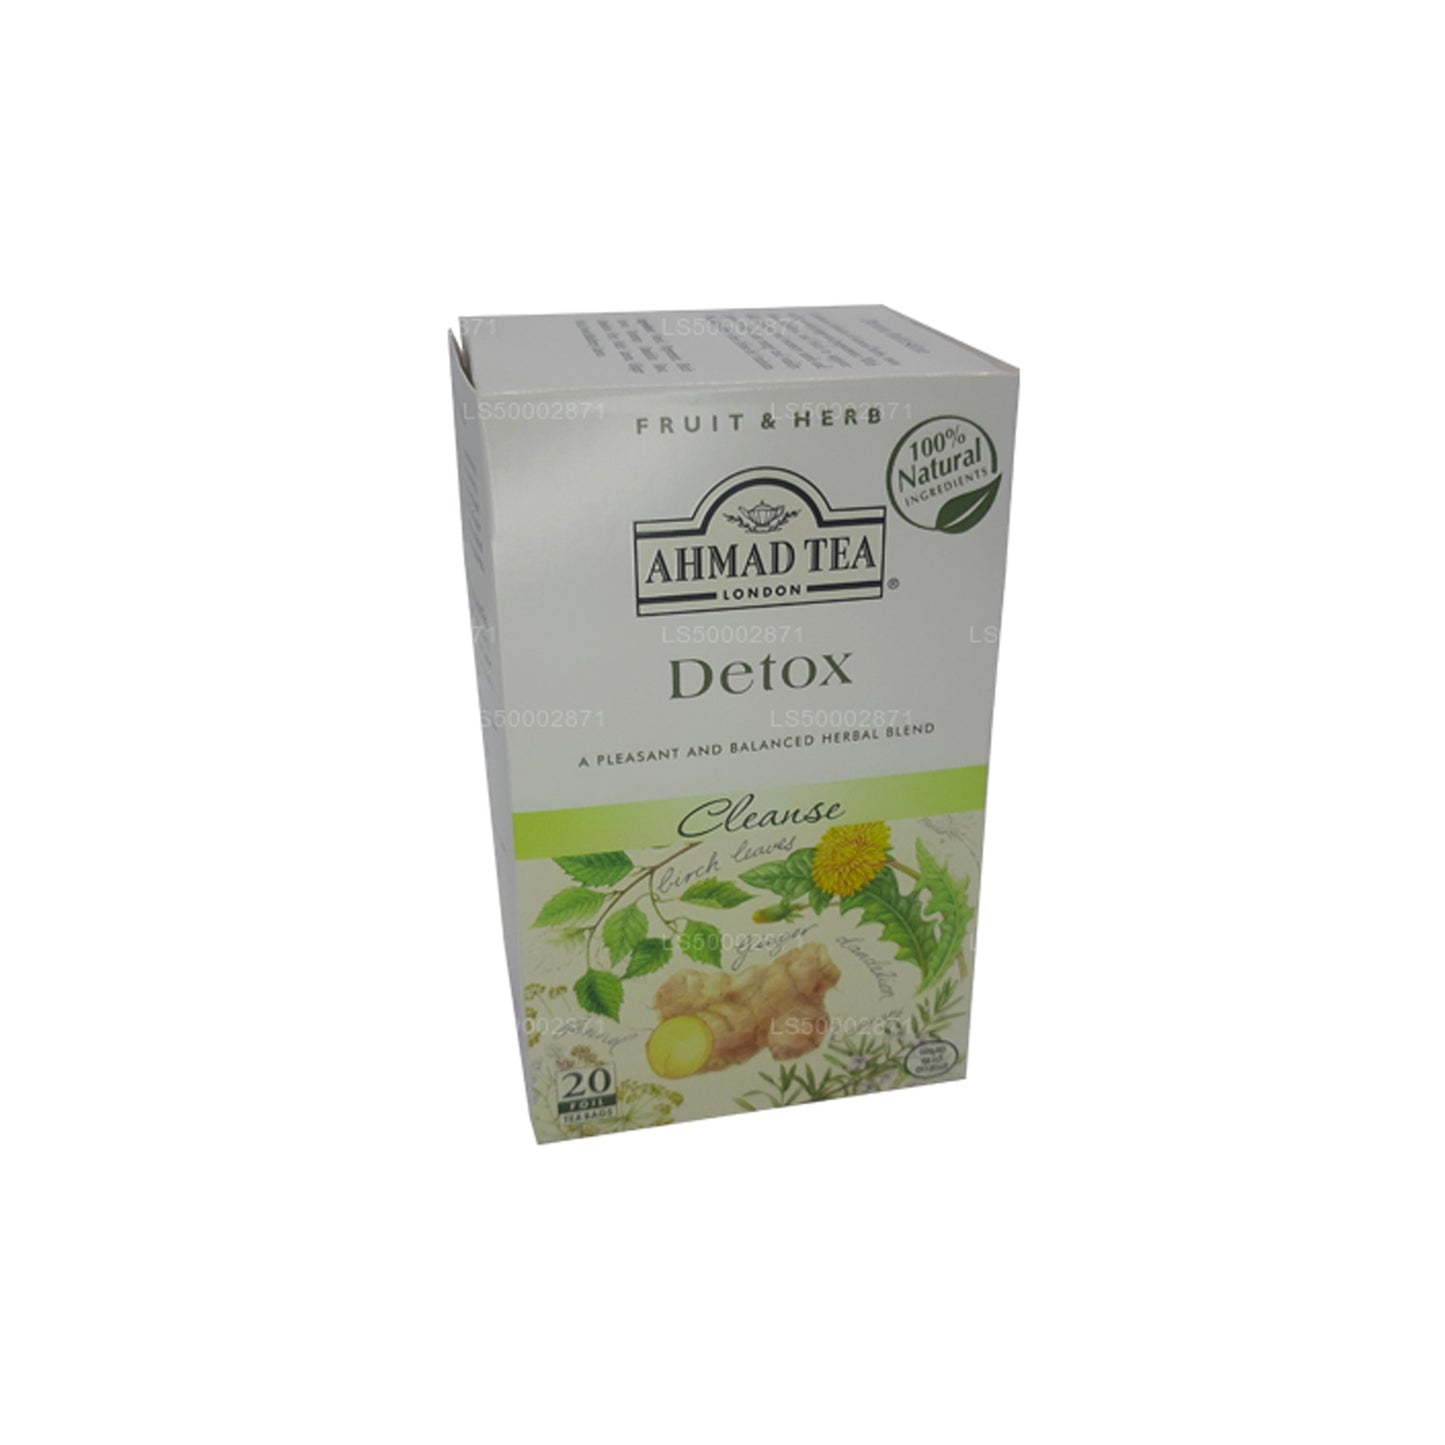 Ahmad Tea Detox Cleanse (20 sachets de thé)